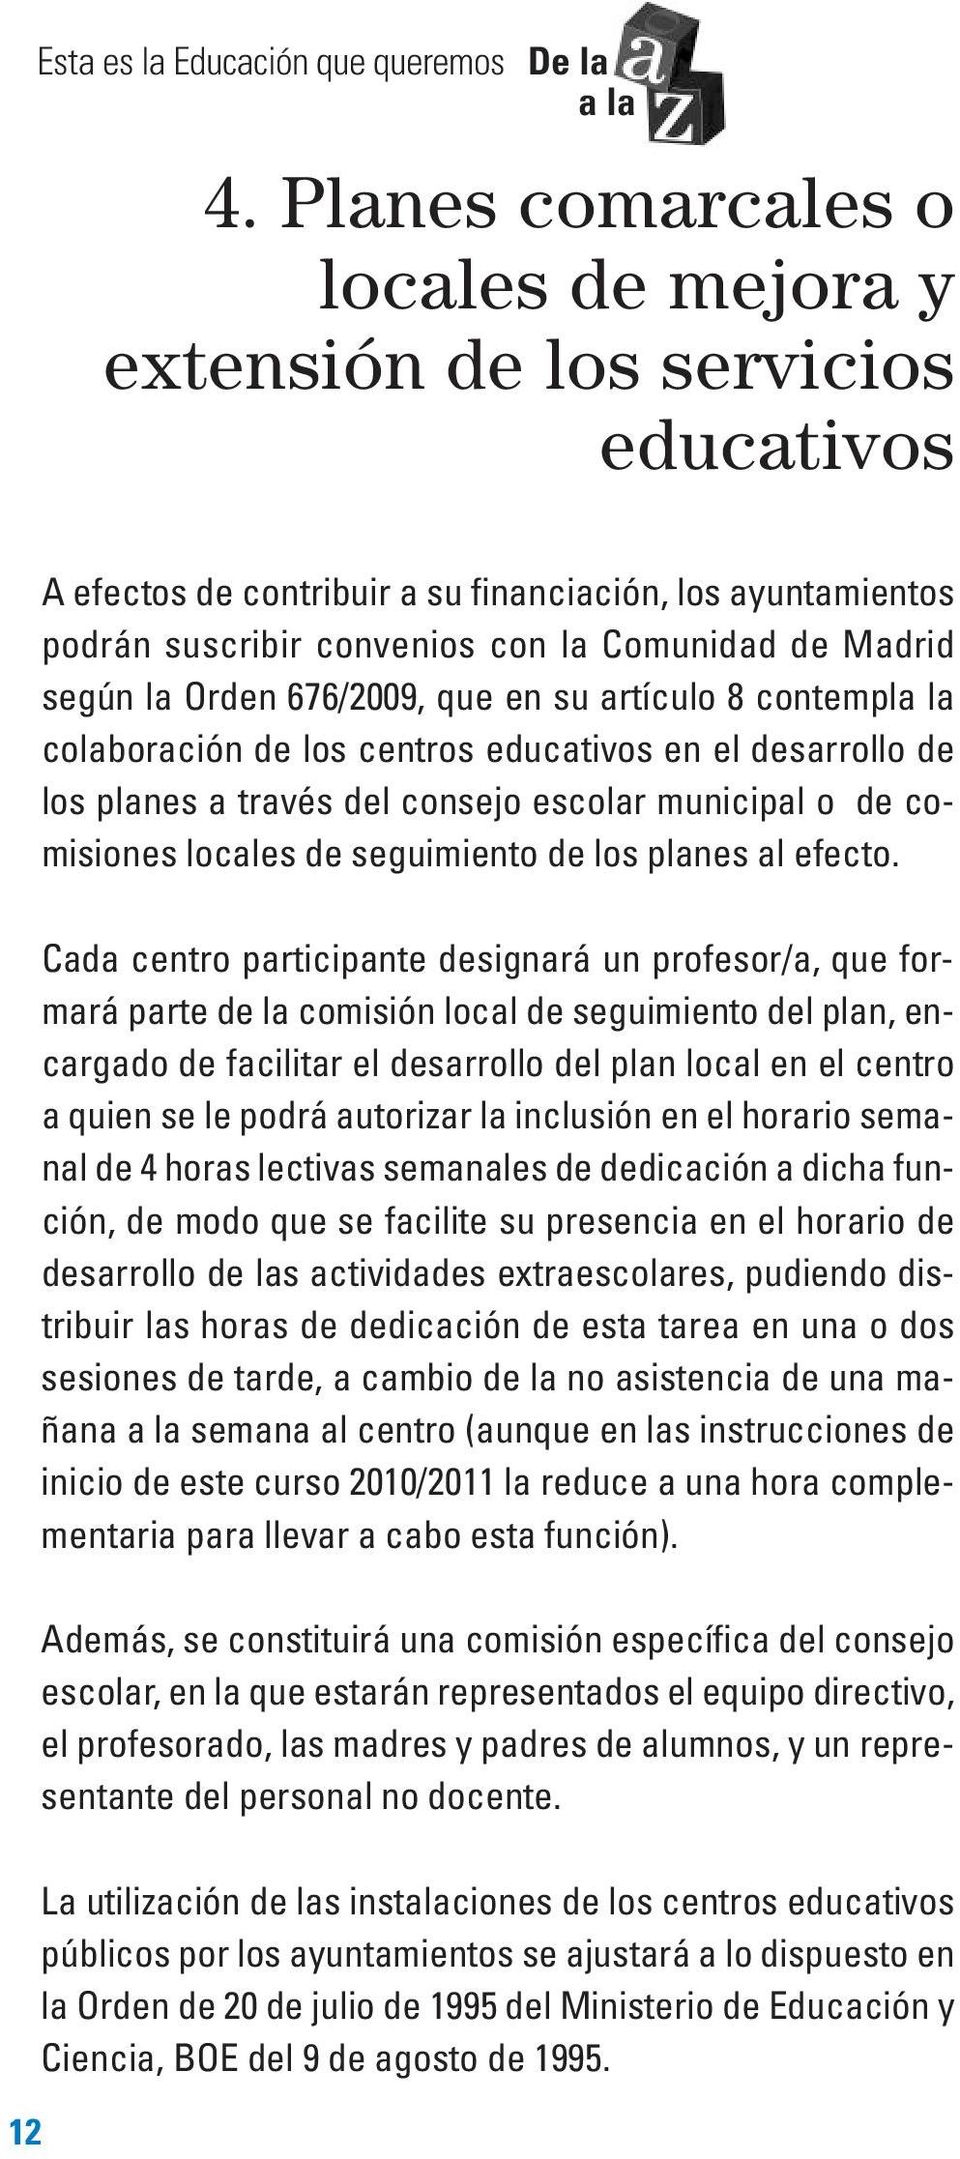 la Orden 676/2009, que en su artículo 8 contempla la colaboración de los centros educativos en el desarrollo de los planes a través del consejo escolar municipal o de comisiones locales de